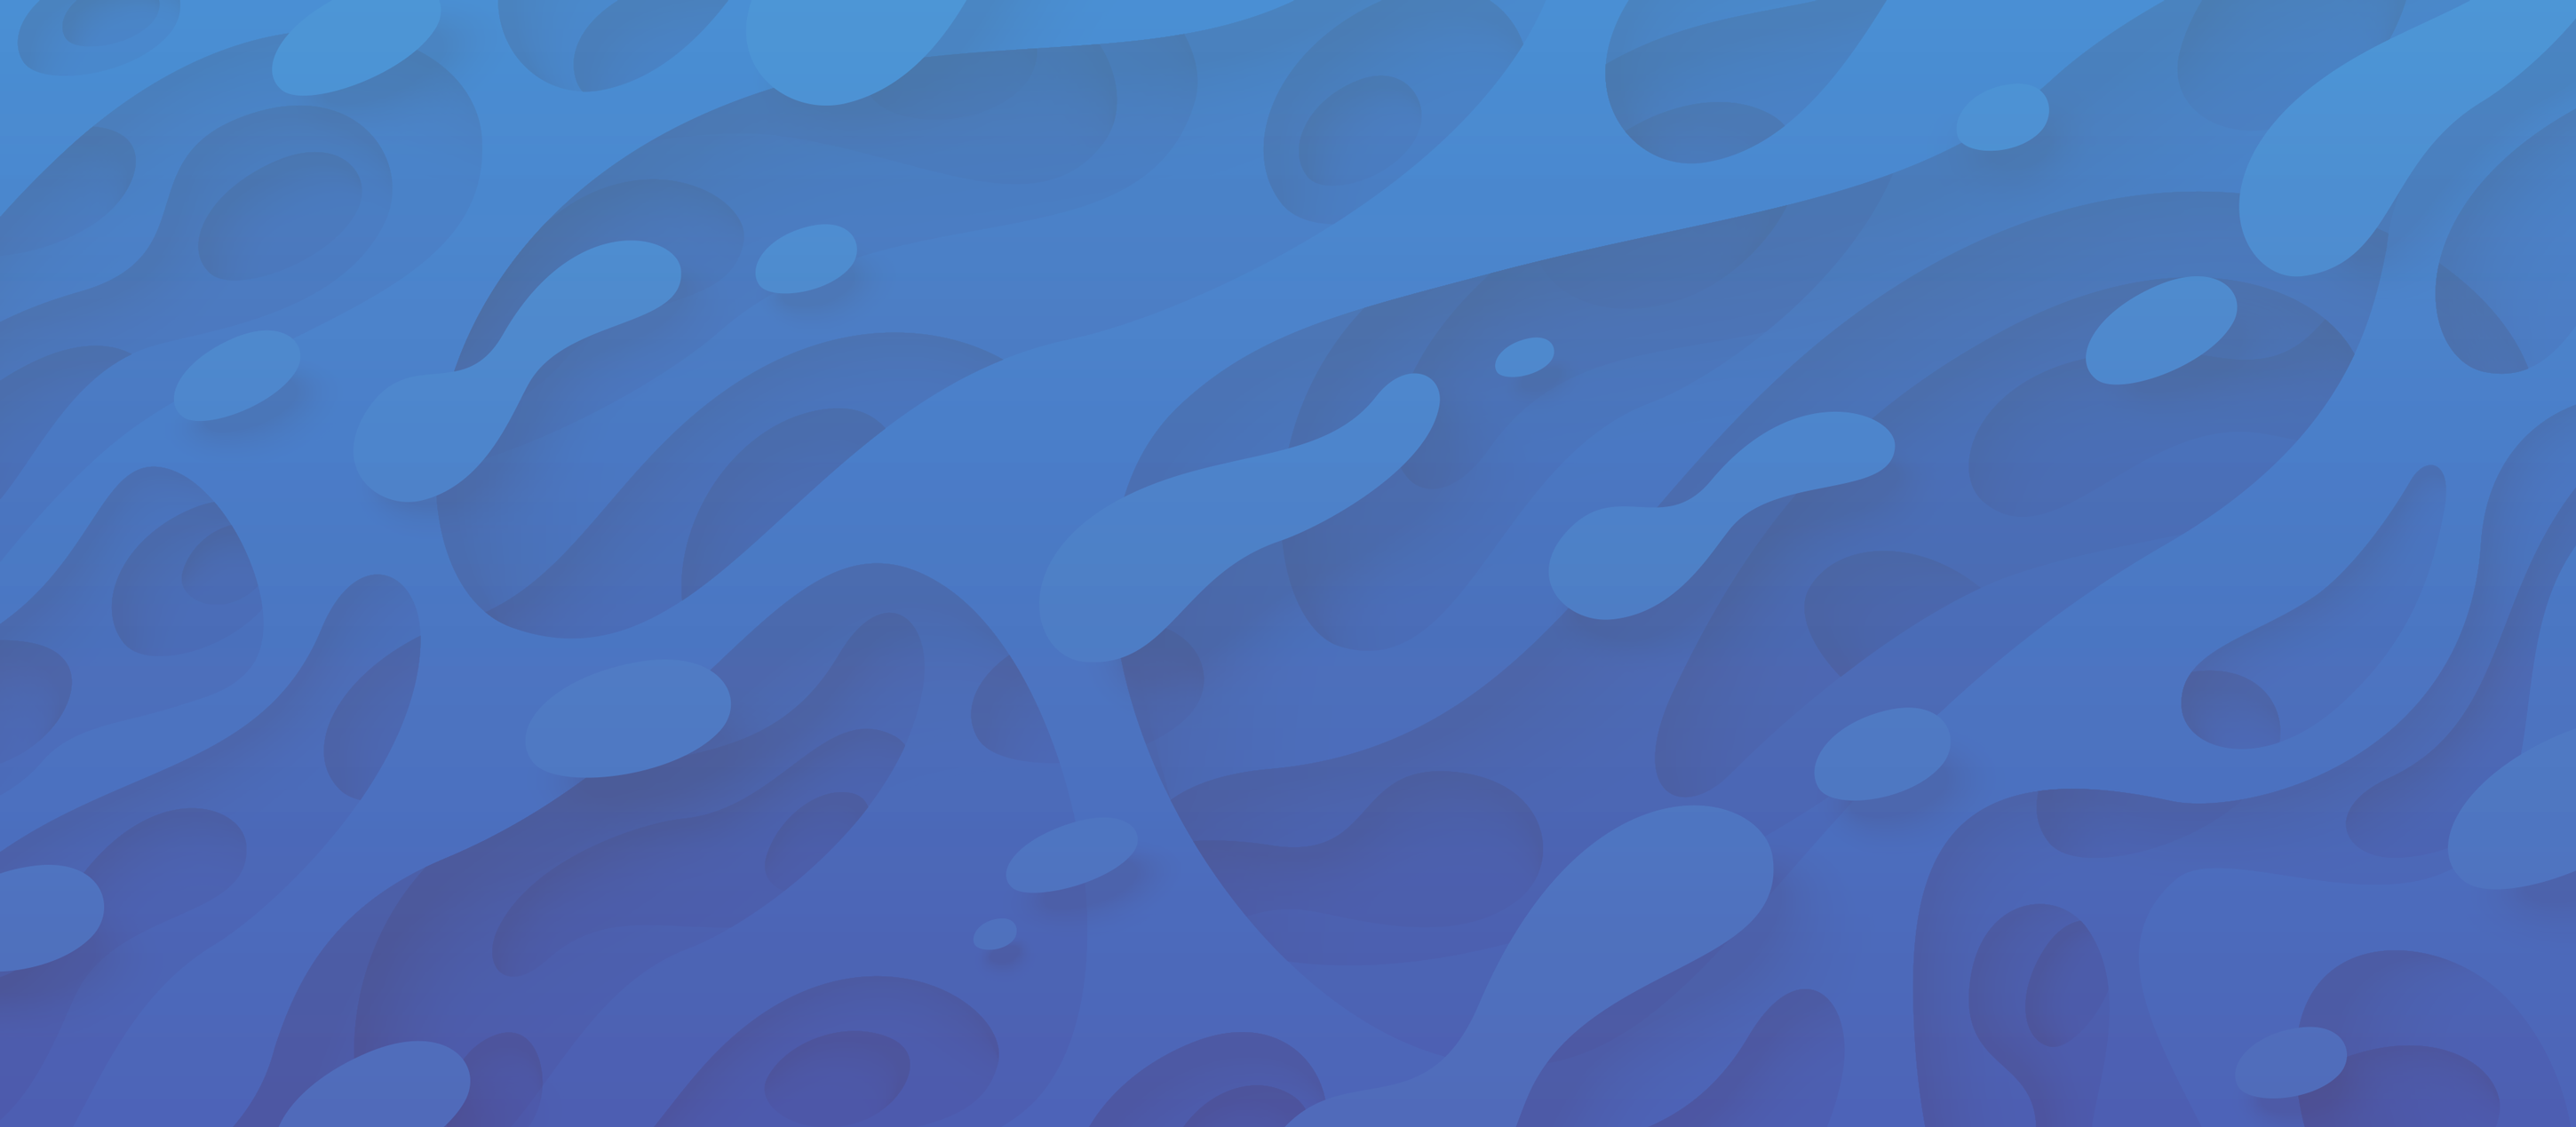 Blue Shaped Background Image